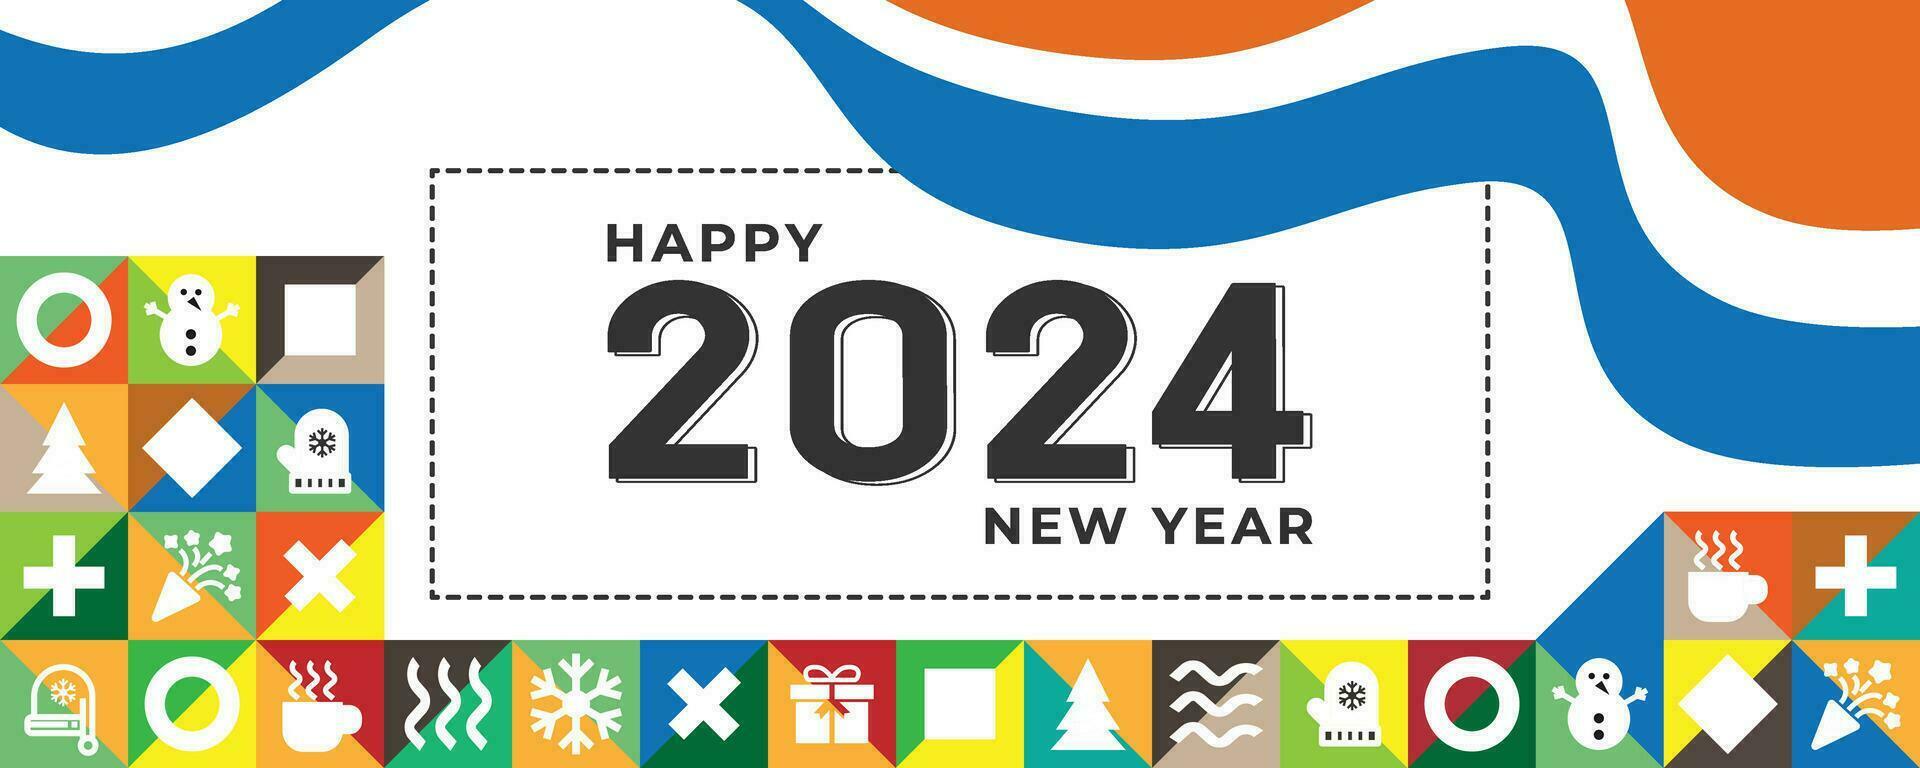 contento nuevo año 2024 - bandera, póster o cubrir imagen para año 2024 enviar tarjeta diseño vector